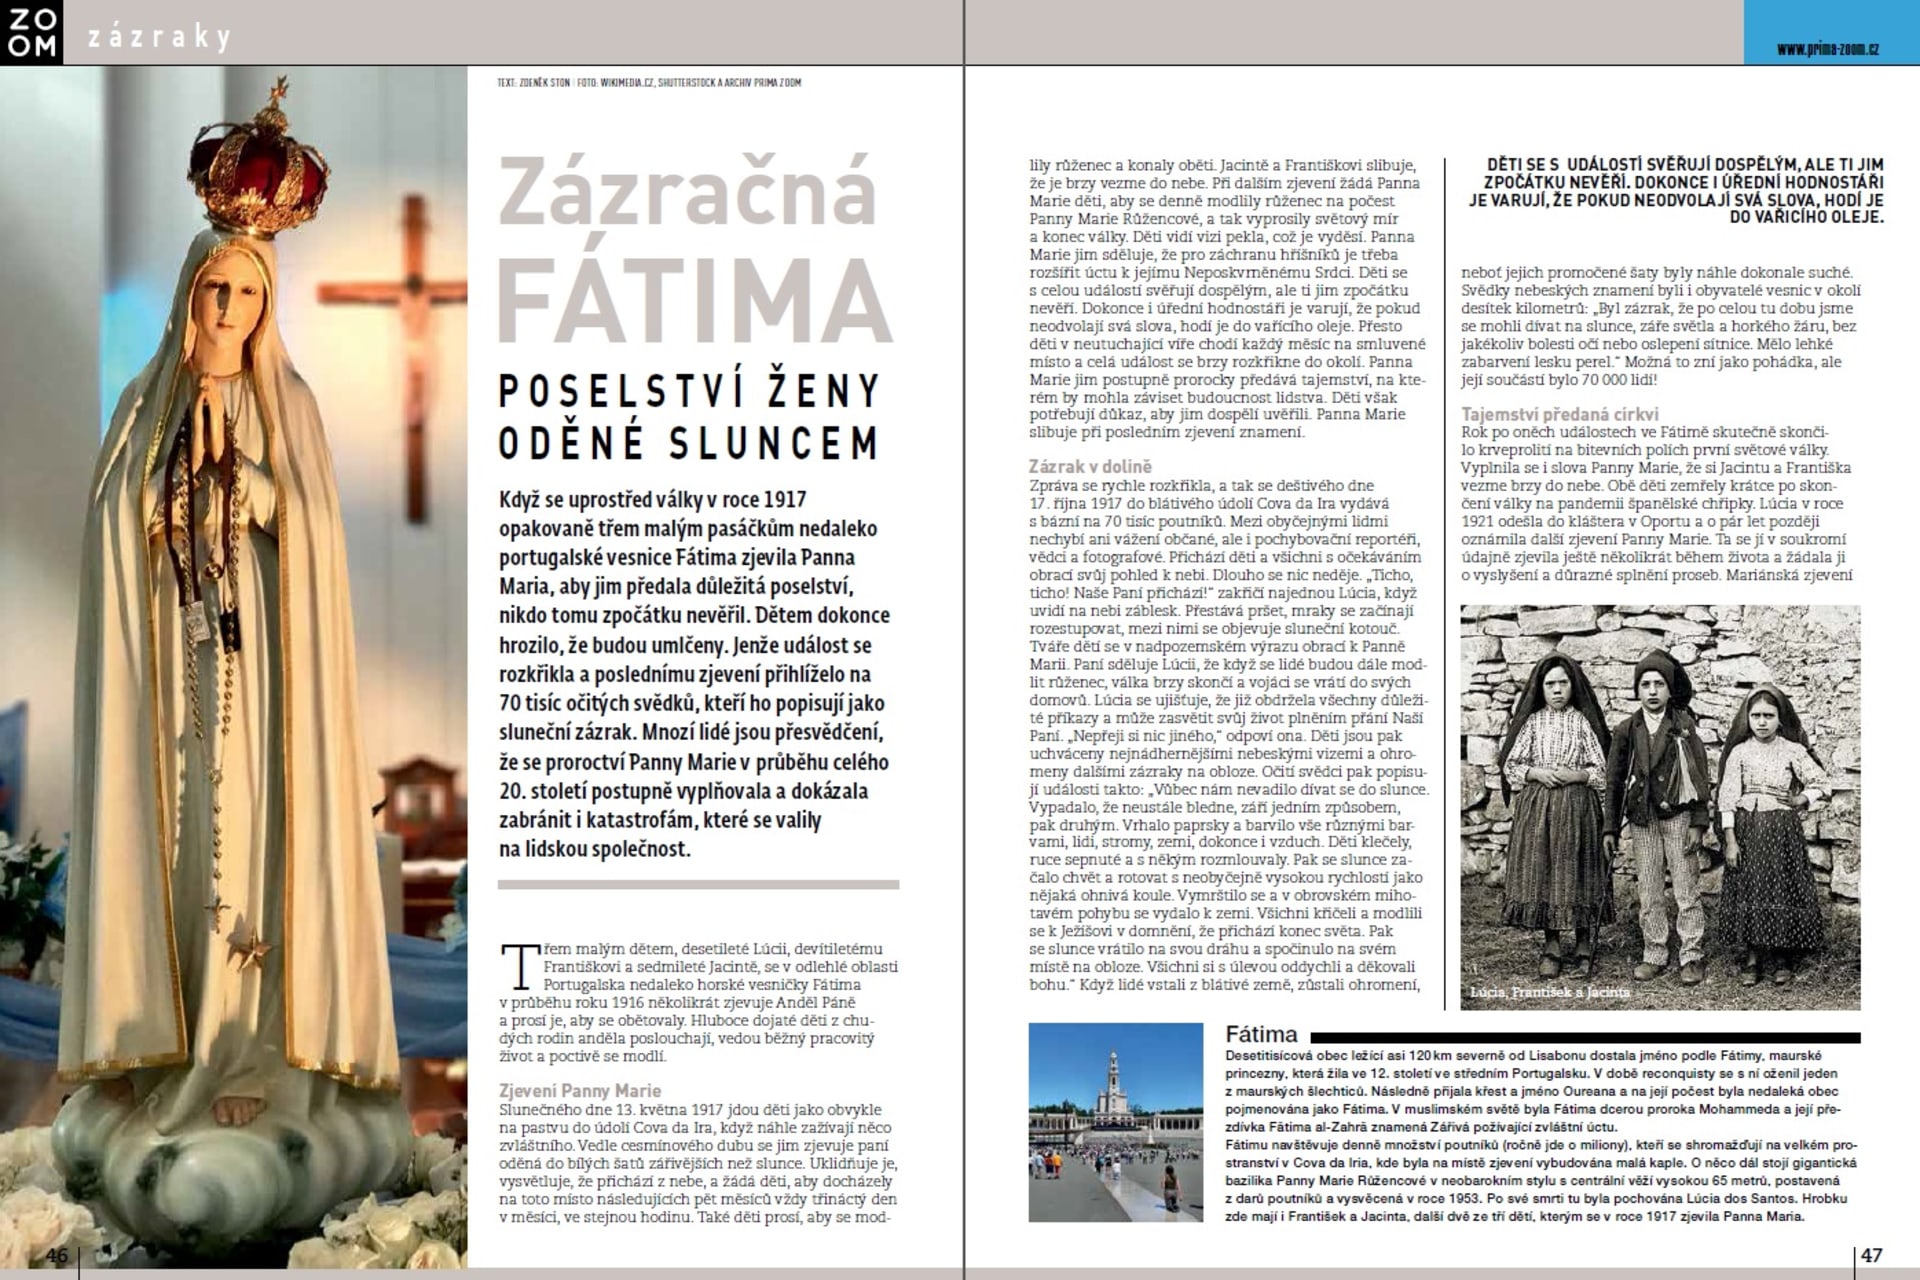 Zázrak z Fátimy a časopis Prima ZOOM